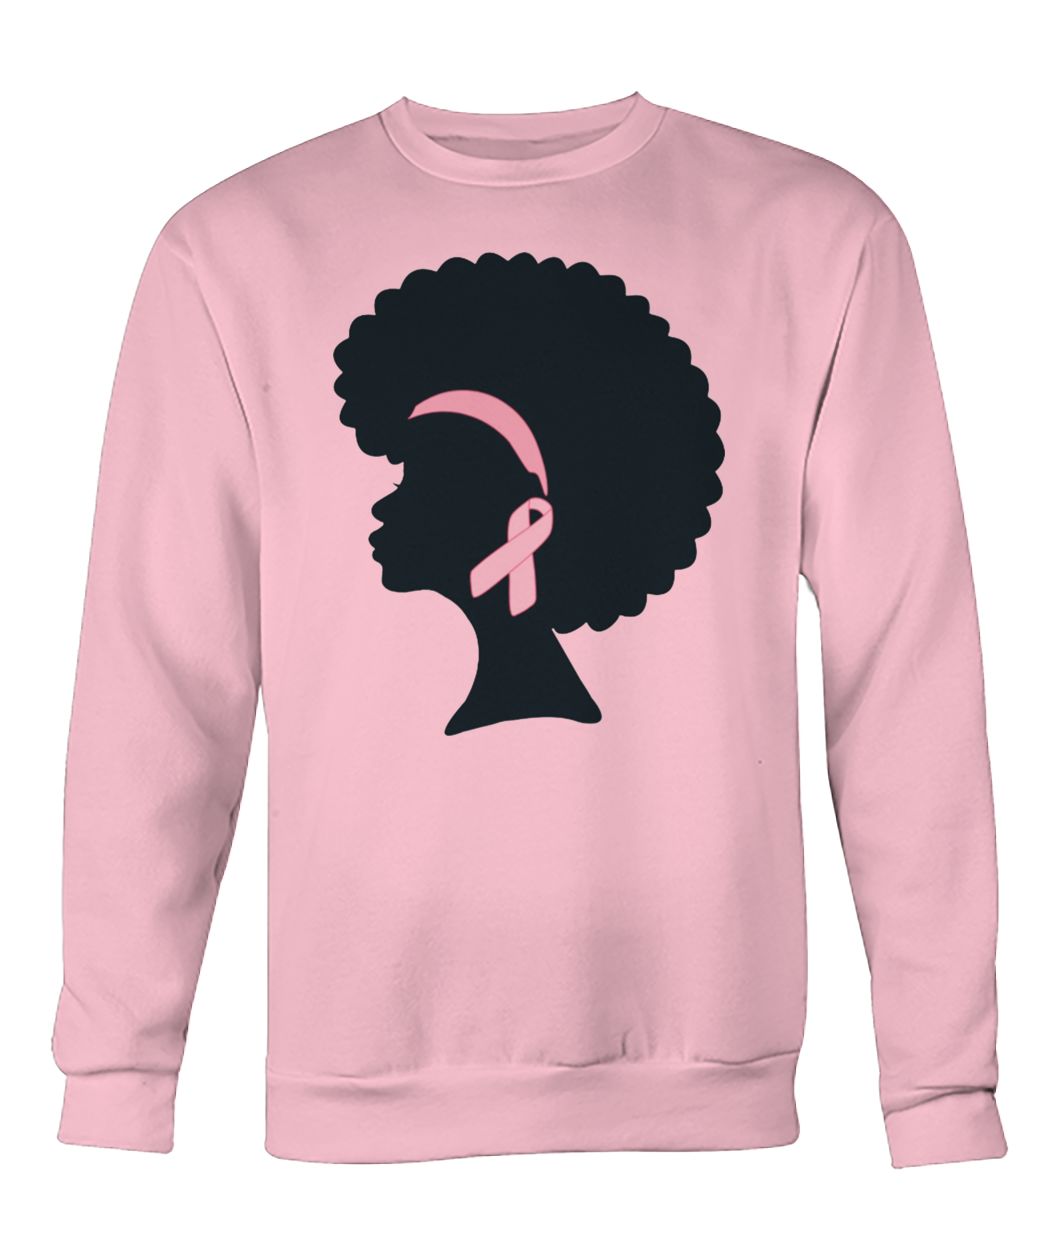 Breast cancer we wear pink crew neck sweatshirt